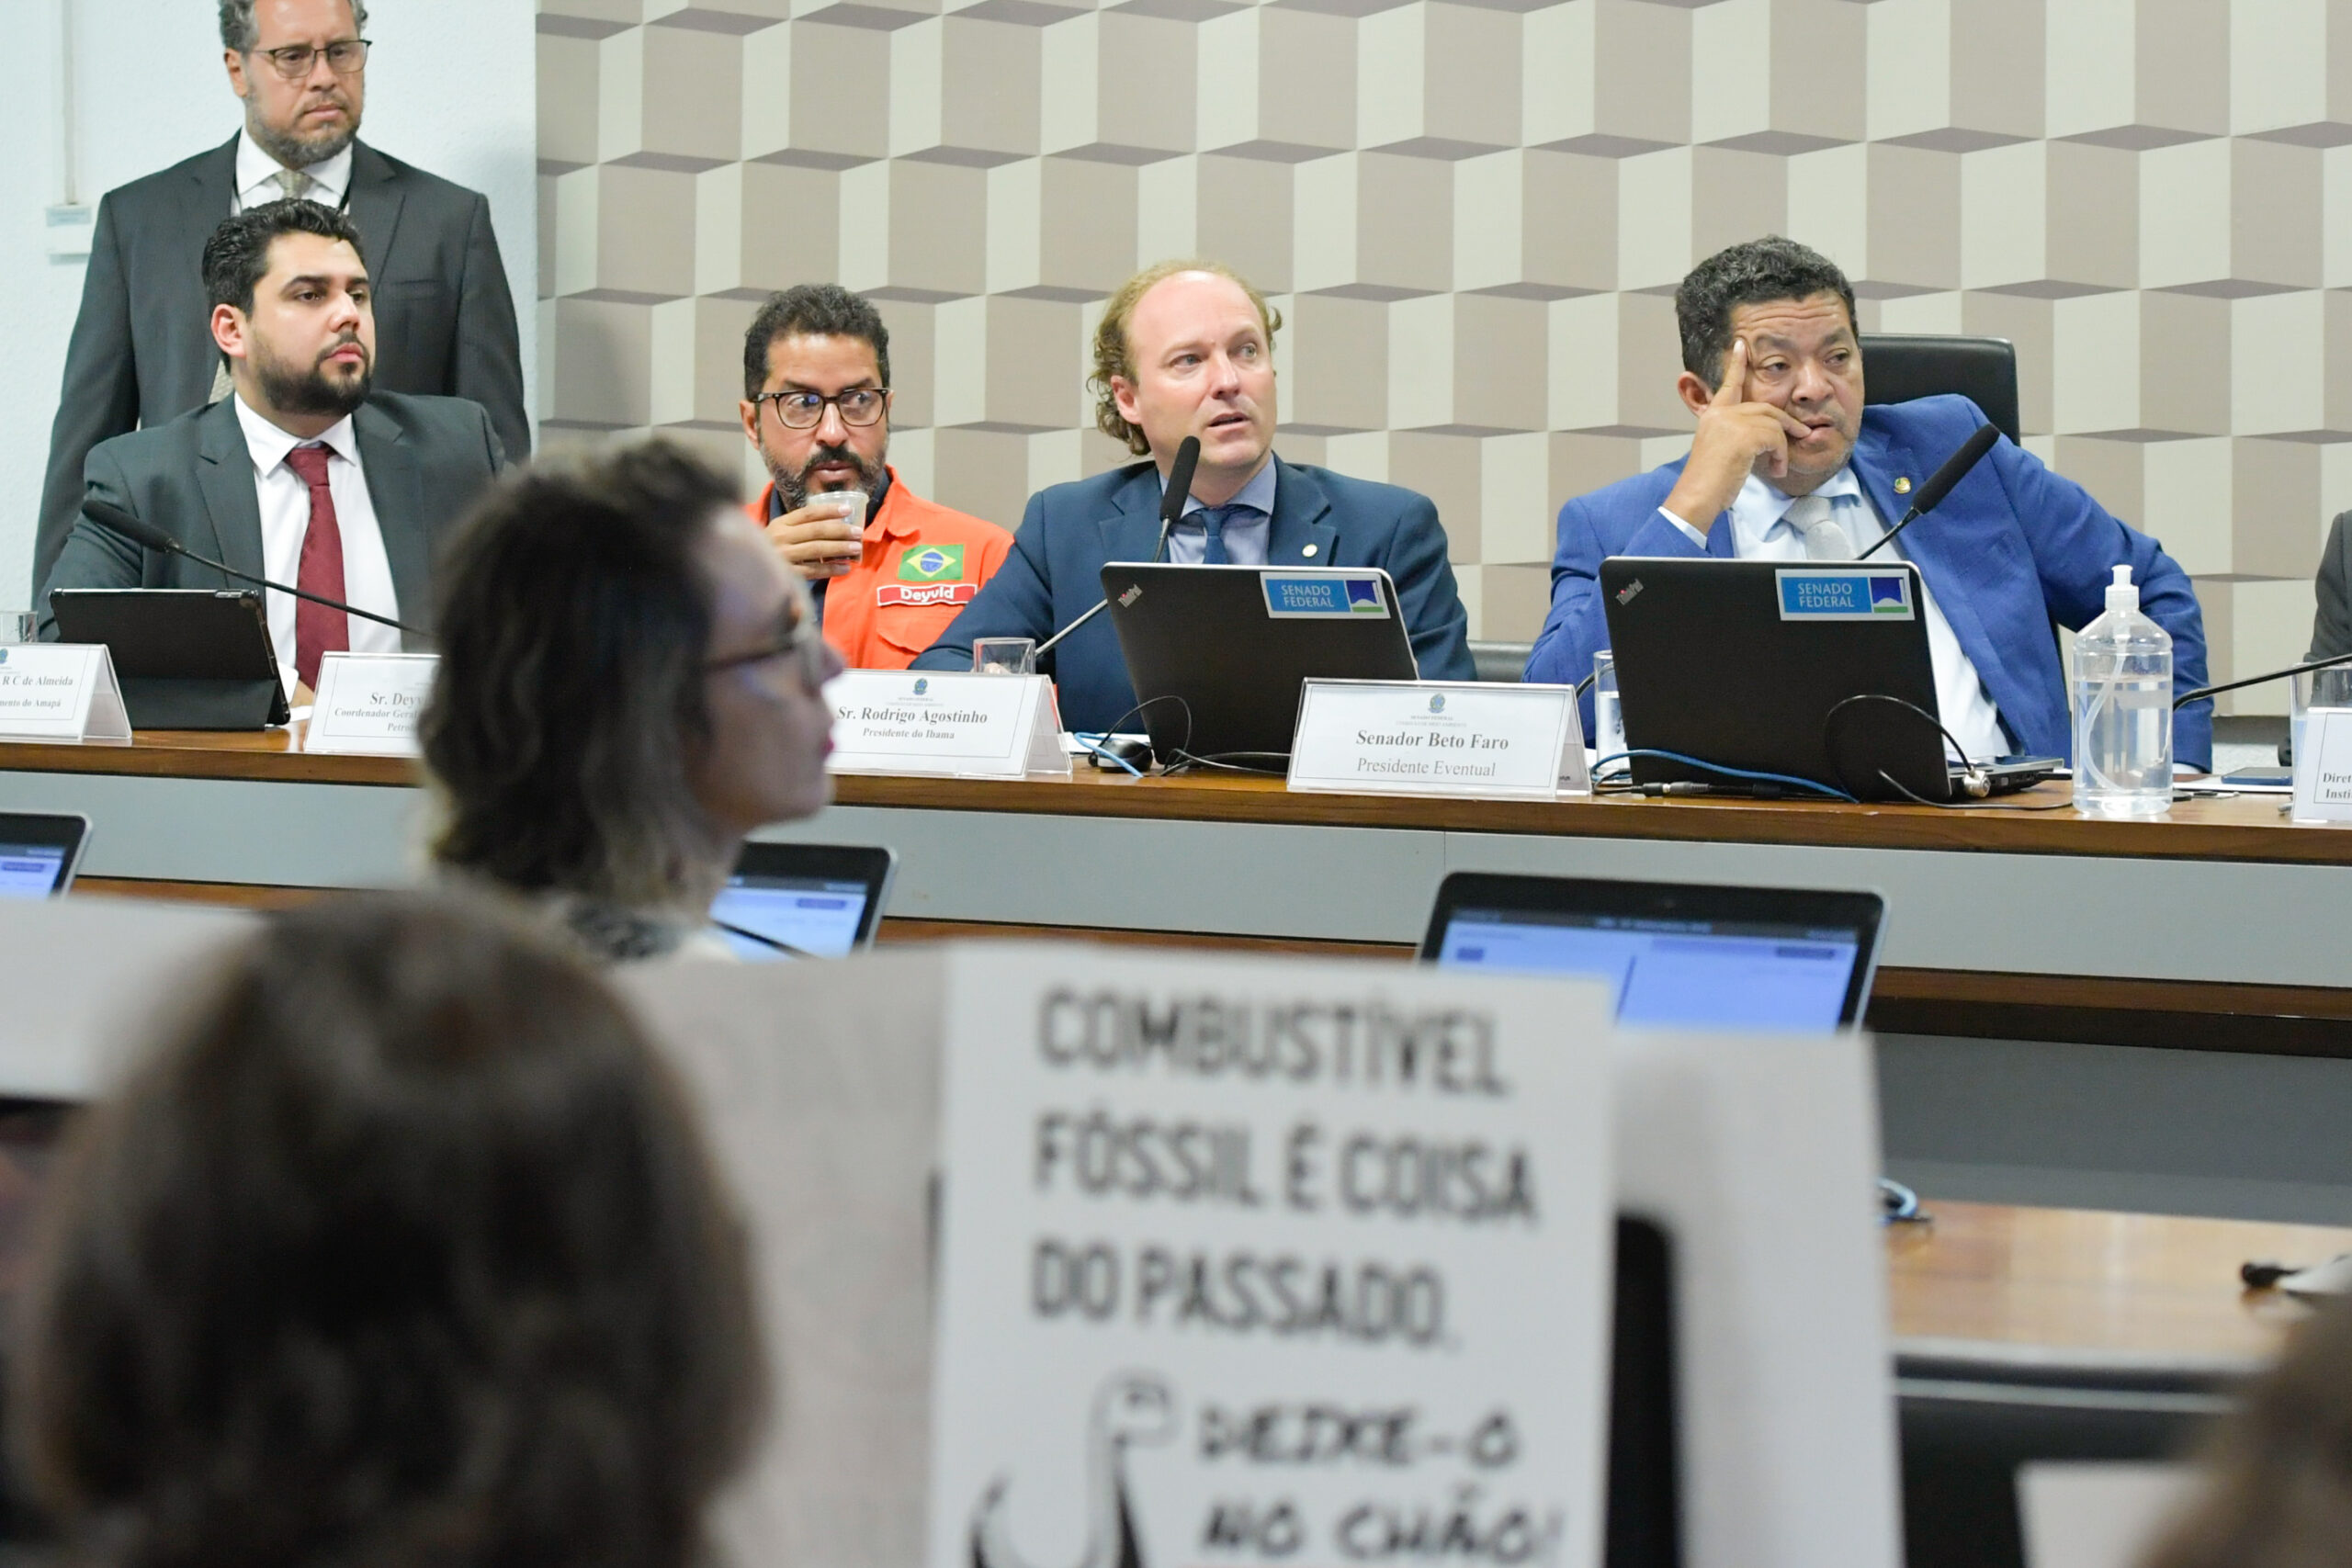 Comissão de Meio Ambiente (CMA) promove Audiência Pública sobre Margem Equatorial brasileira. Foto: Geraldo Magela/Agência Senado